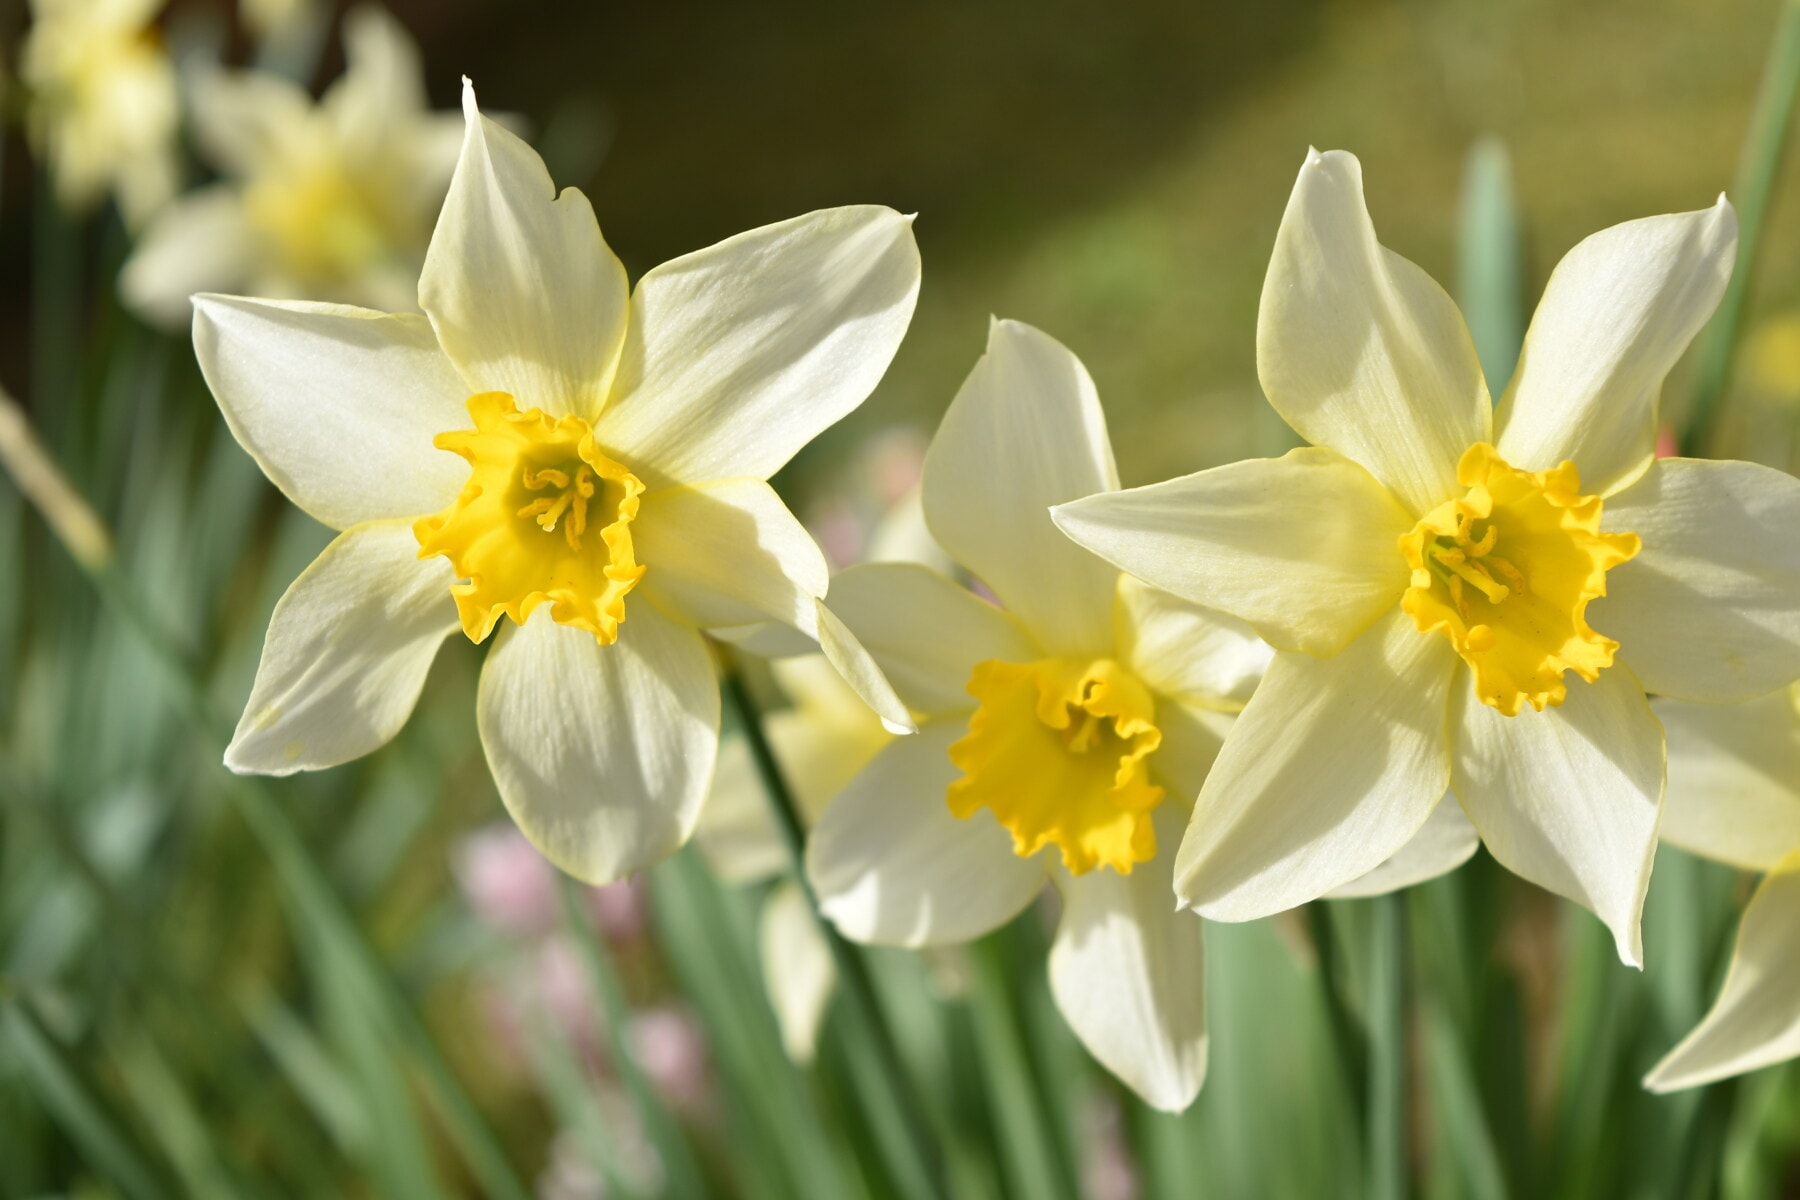 bunga, Narcissus, ramuan, mekar, bunga, bakung, flora, Taman, daun, cerah